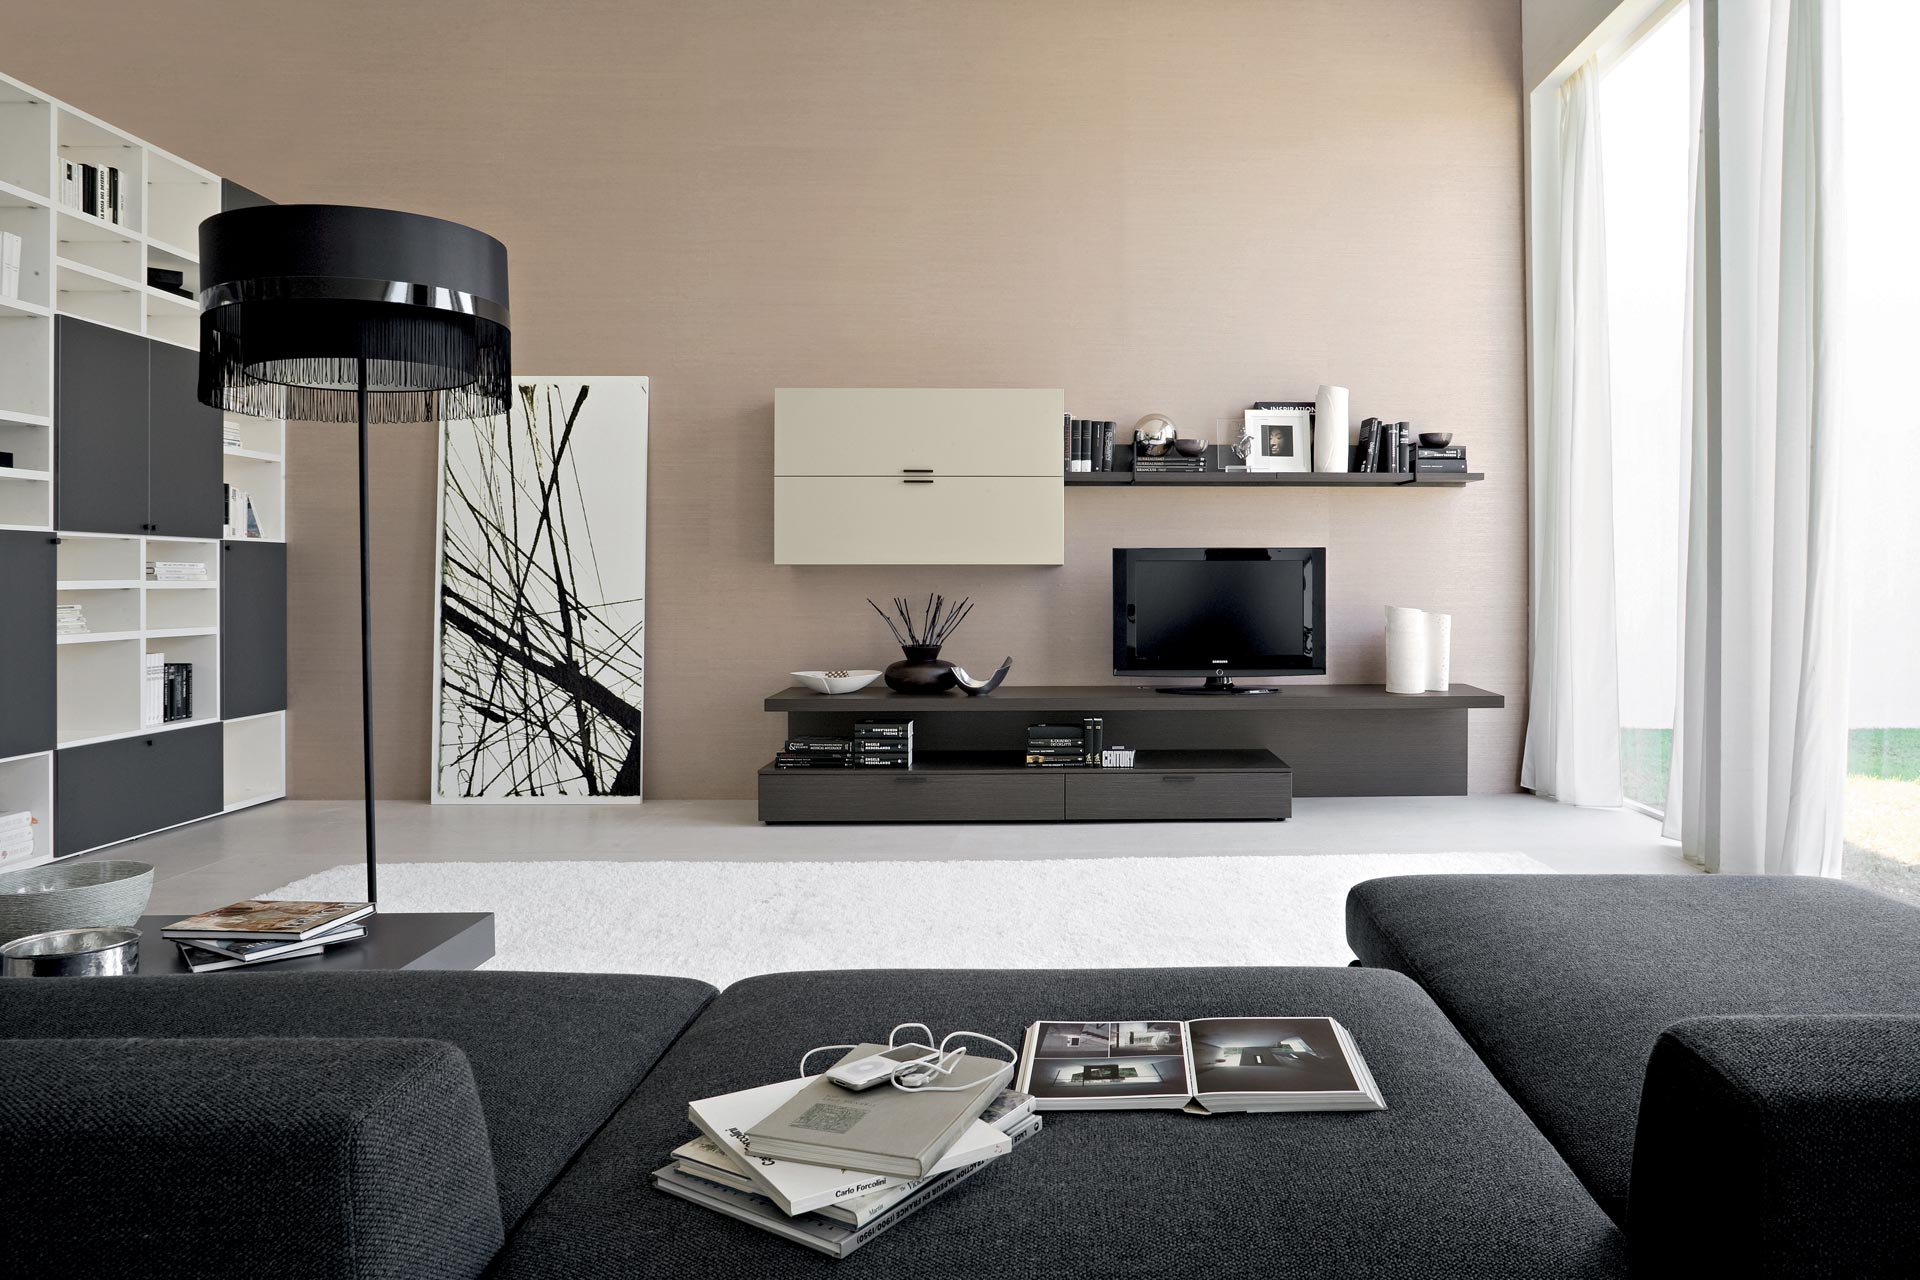 contemporary-living-room-ideas-good-design-9-on-living-design-ideas